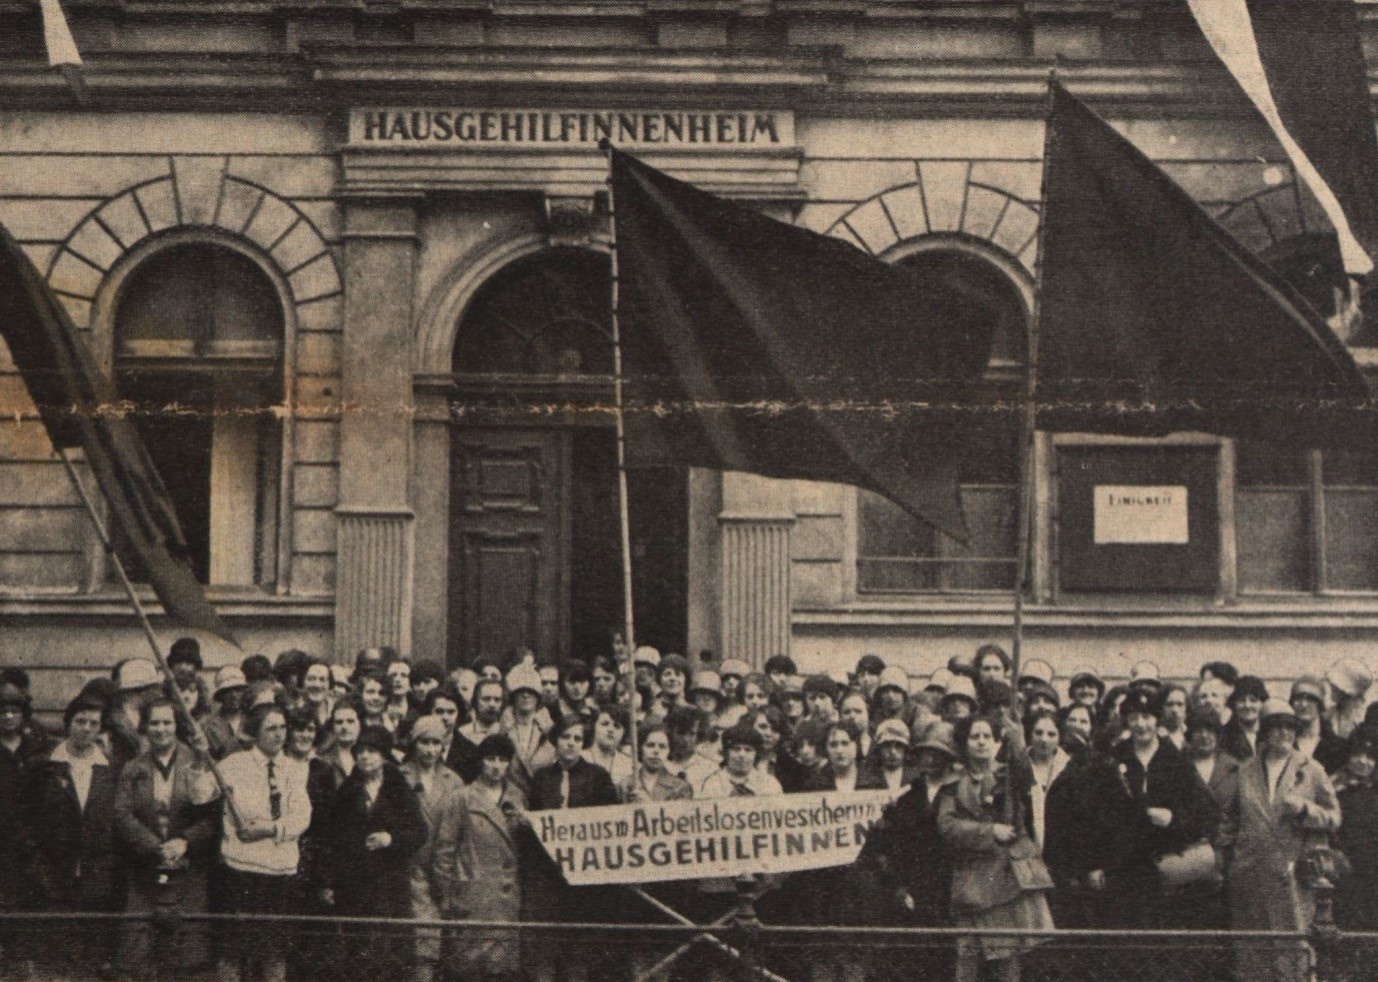 Eine große Gruppe Frauen in Festkleidung mit drei großen Fahnen und einem Banner steht vor dem Eingang zu einem Haus. Auf dem Banner ist zu lesen: Heraus mit der Arbeitslosenversicherung für Hausgehilfinnen.  © ANNO ÖNB